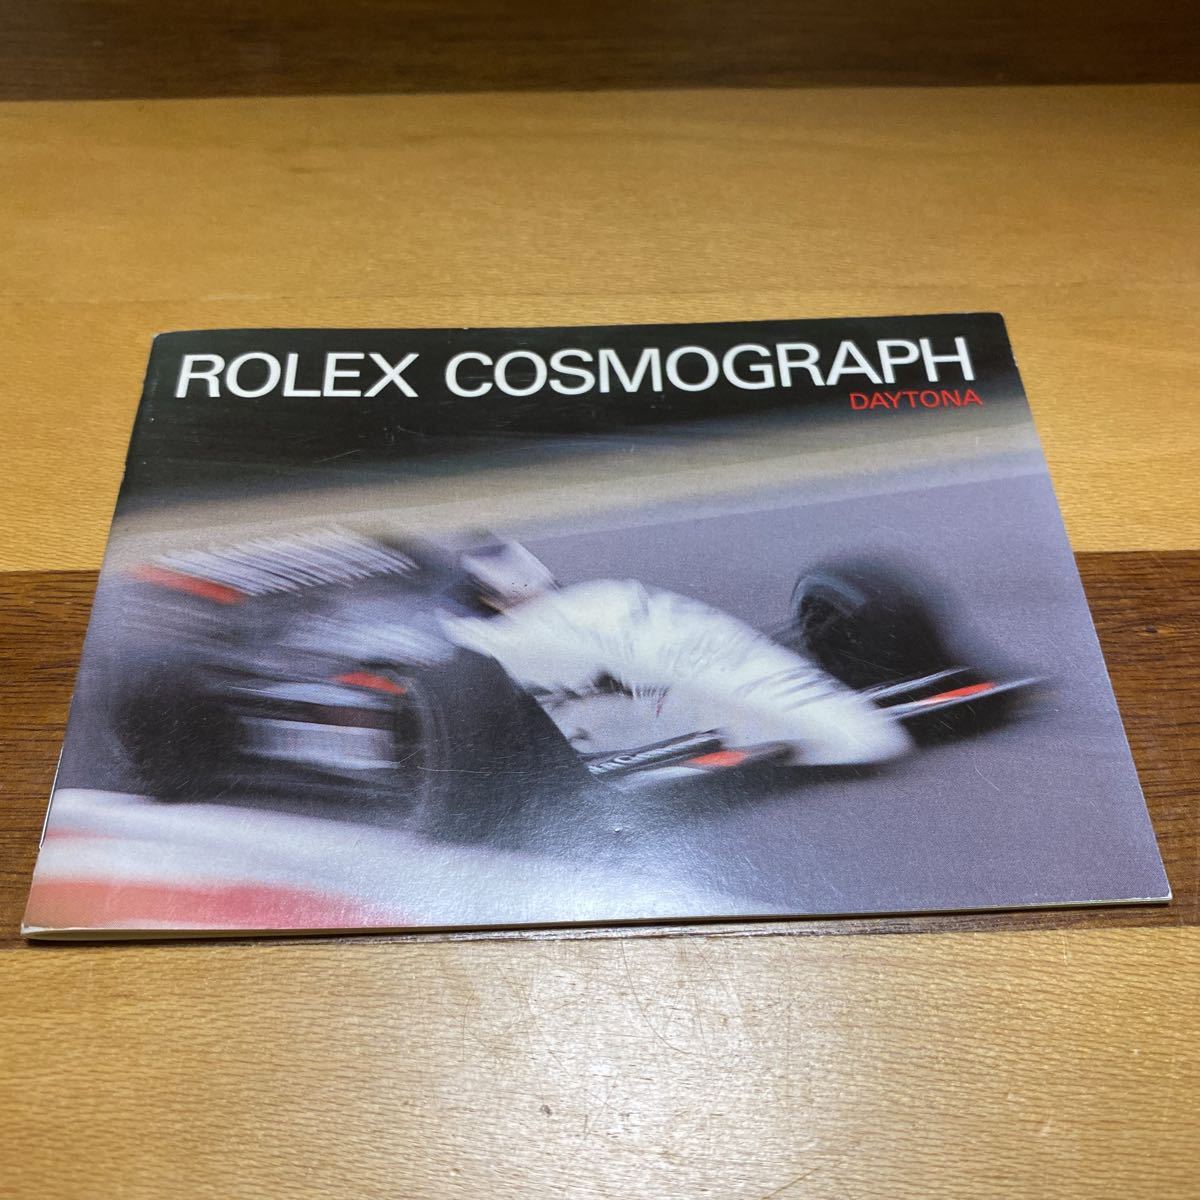 001【超希少必見】ロレックス デイトナ冊子 1988年度版 ROLEX COSMOGRAPH DAYTONA 逆6 段落ち